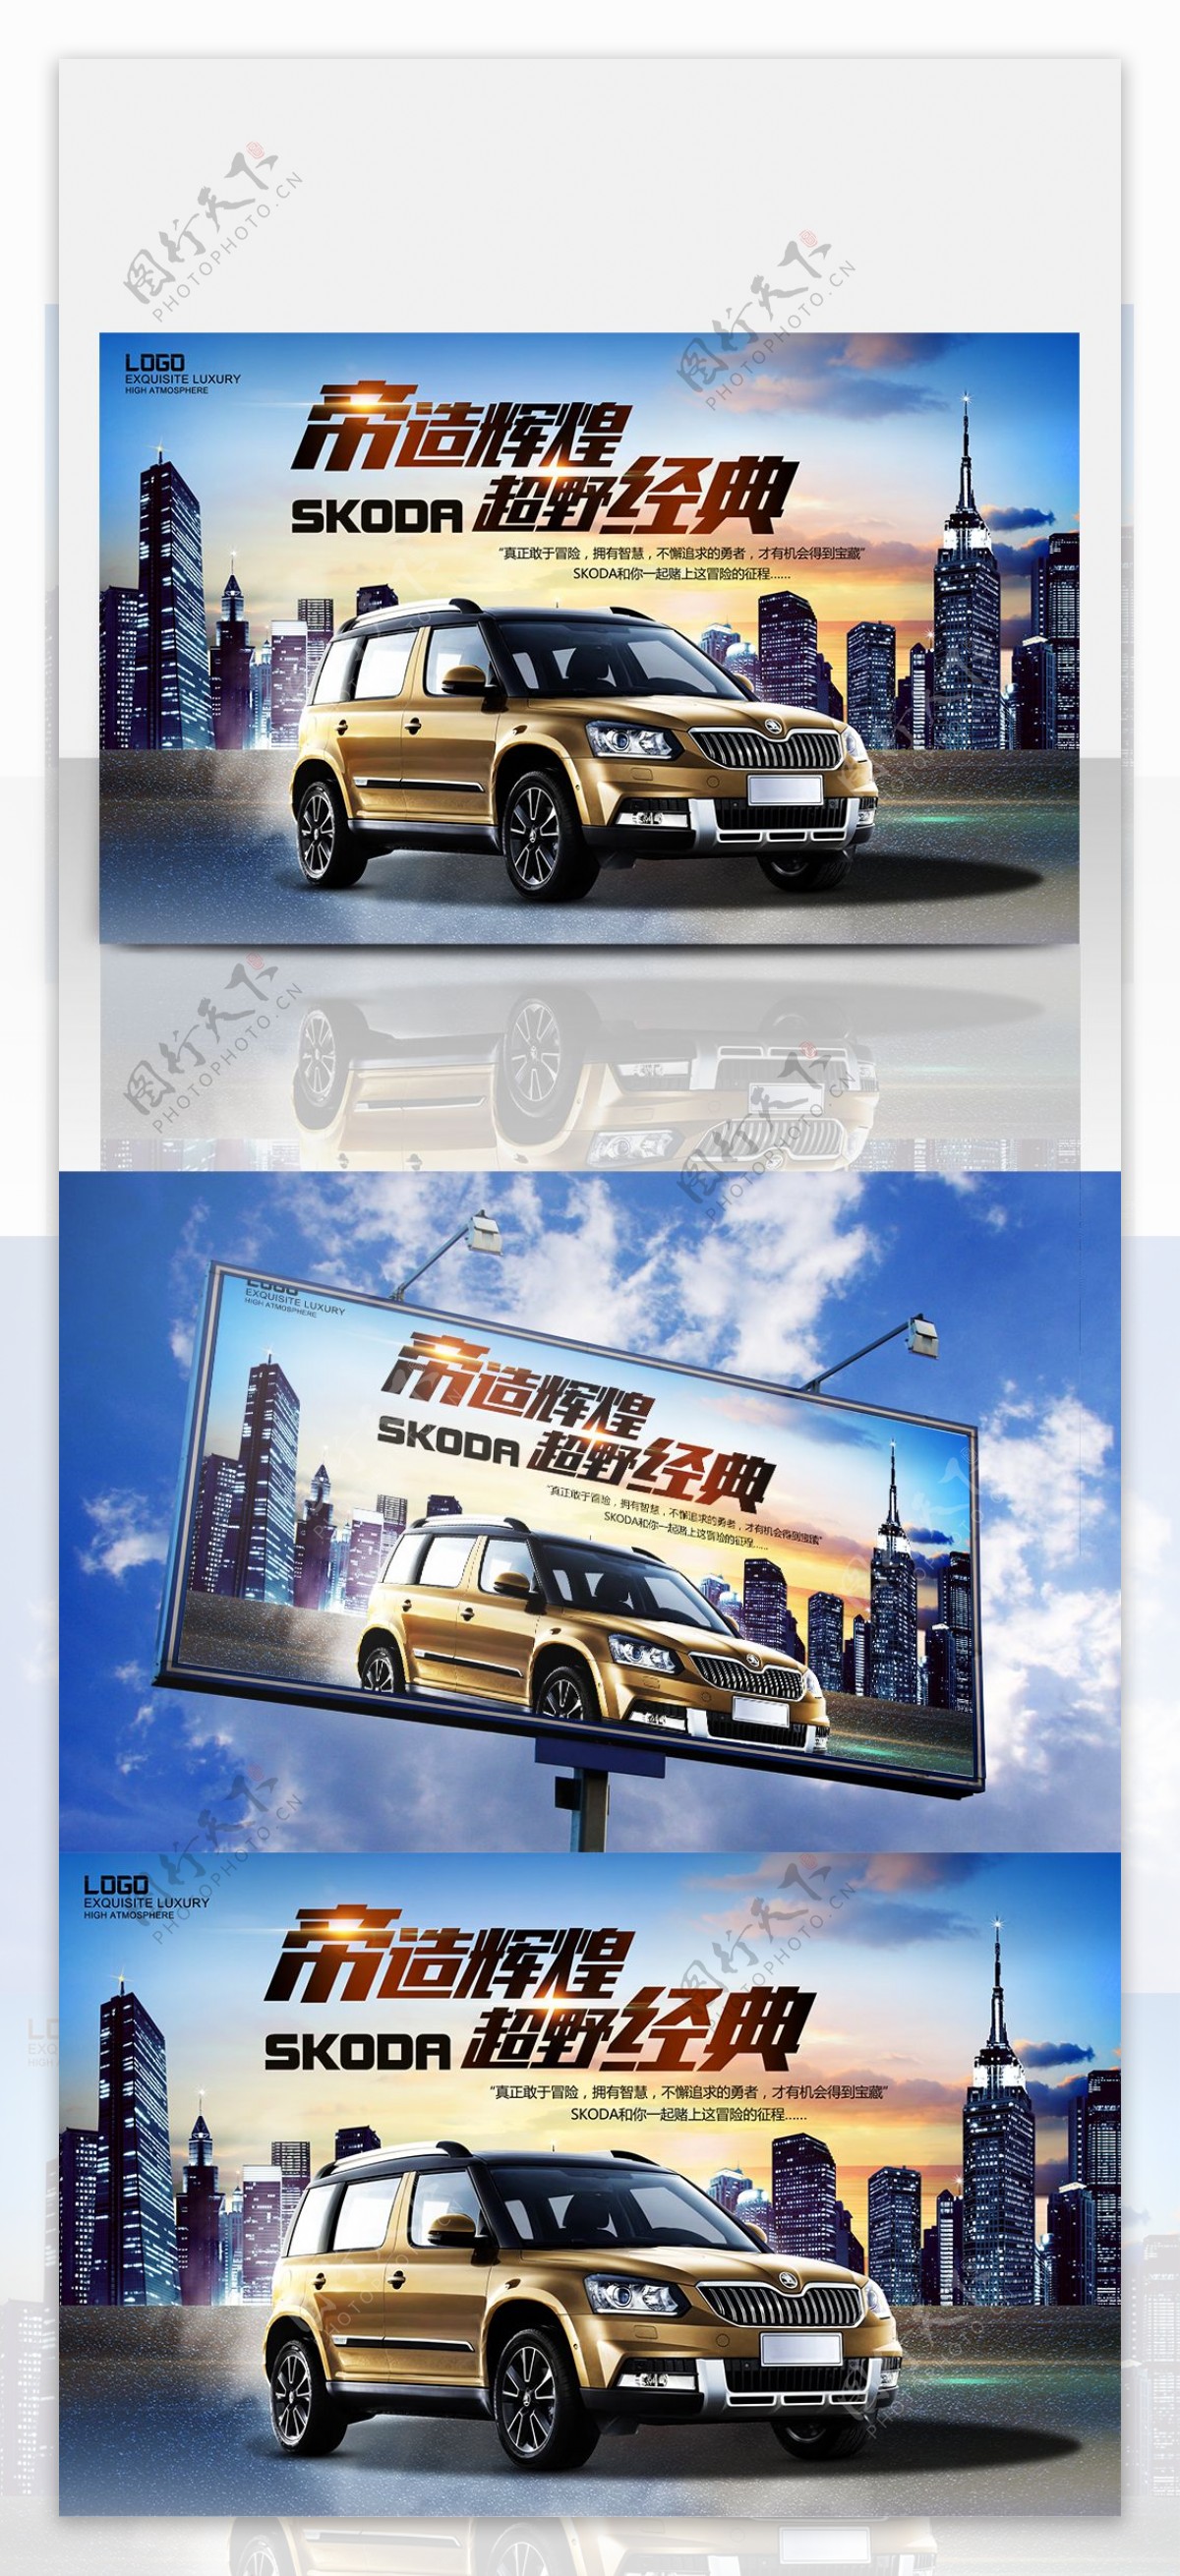 高端高档汽车SUV促销宣传海报